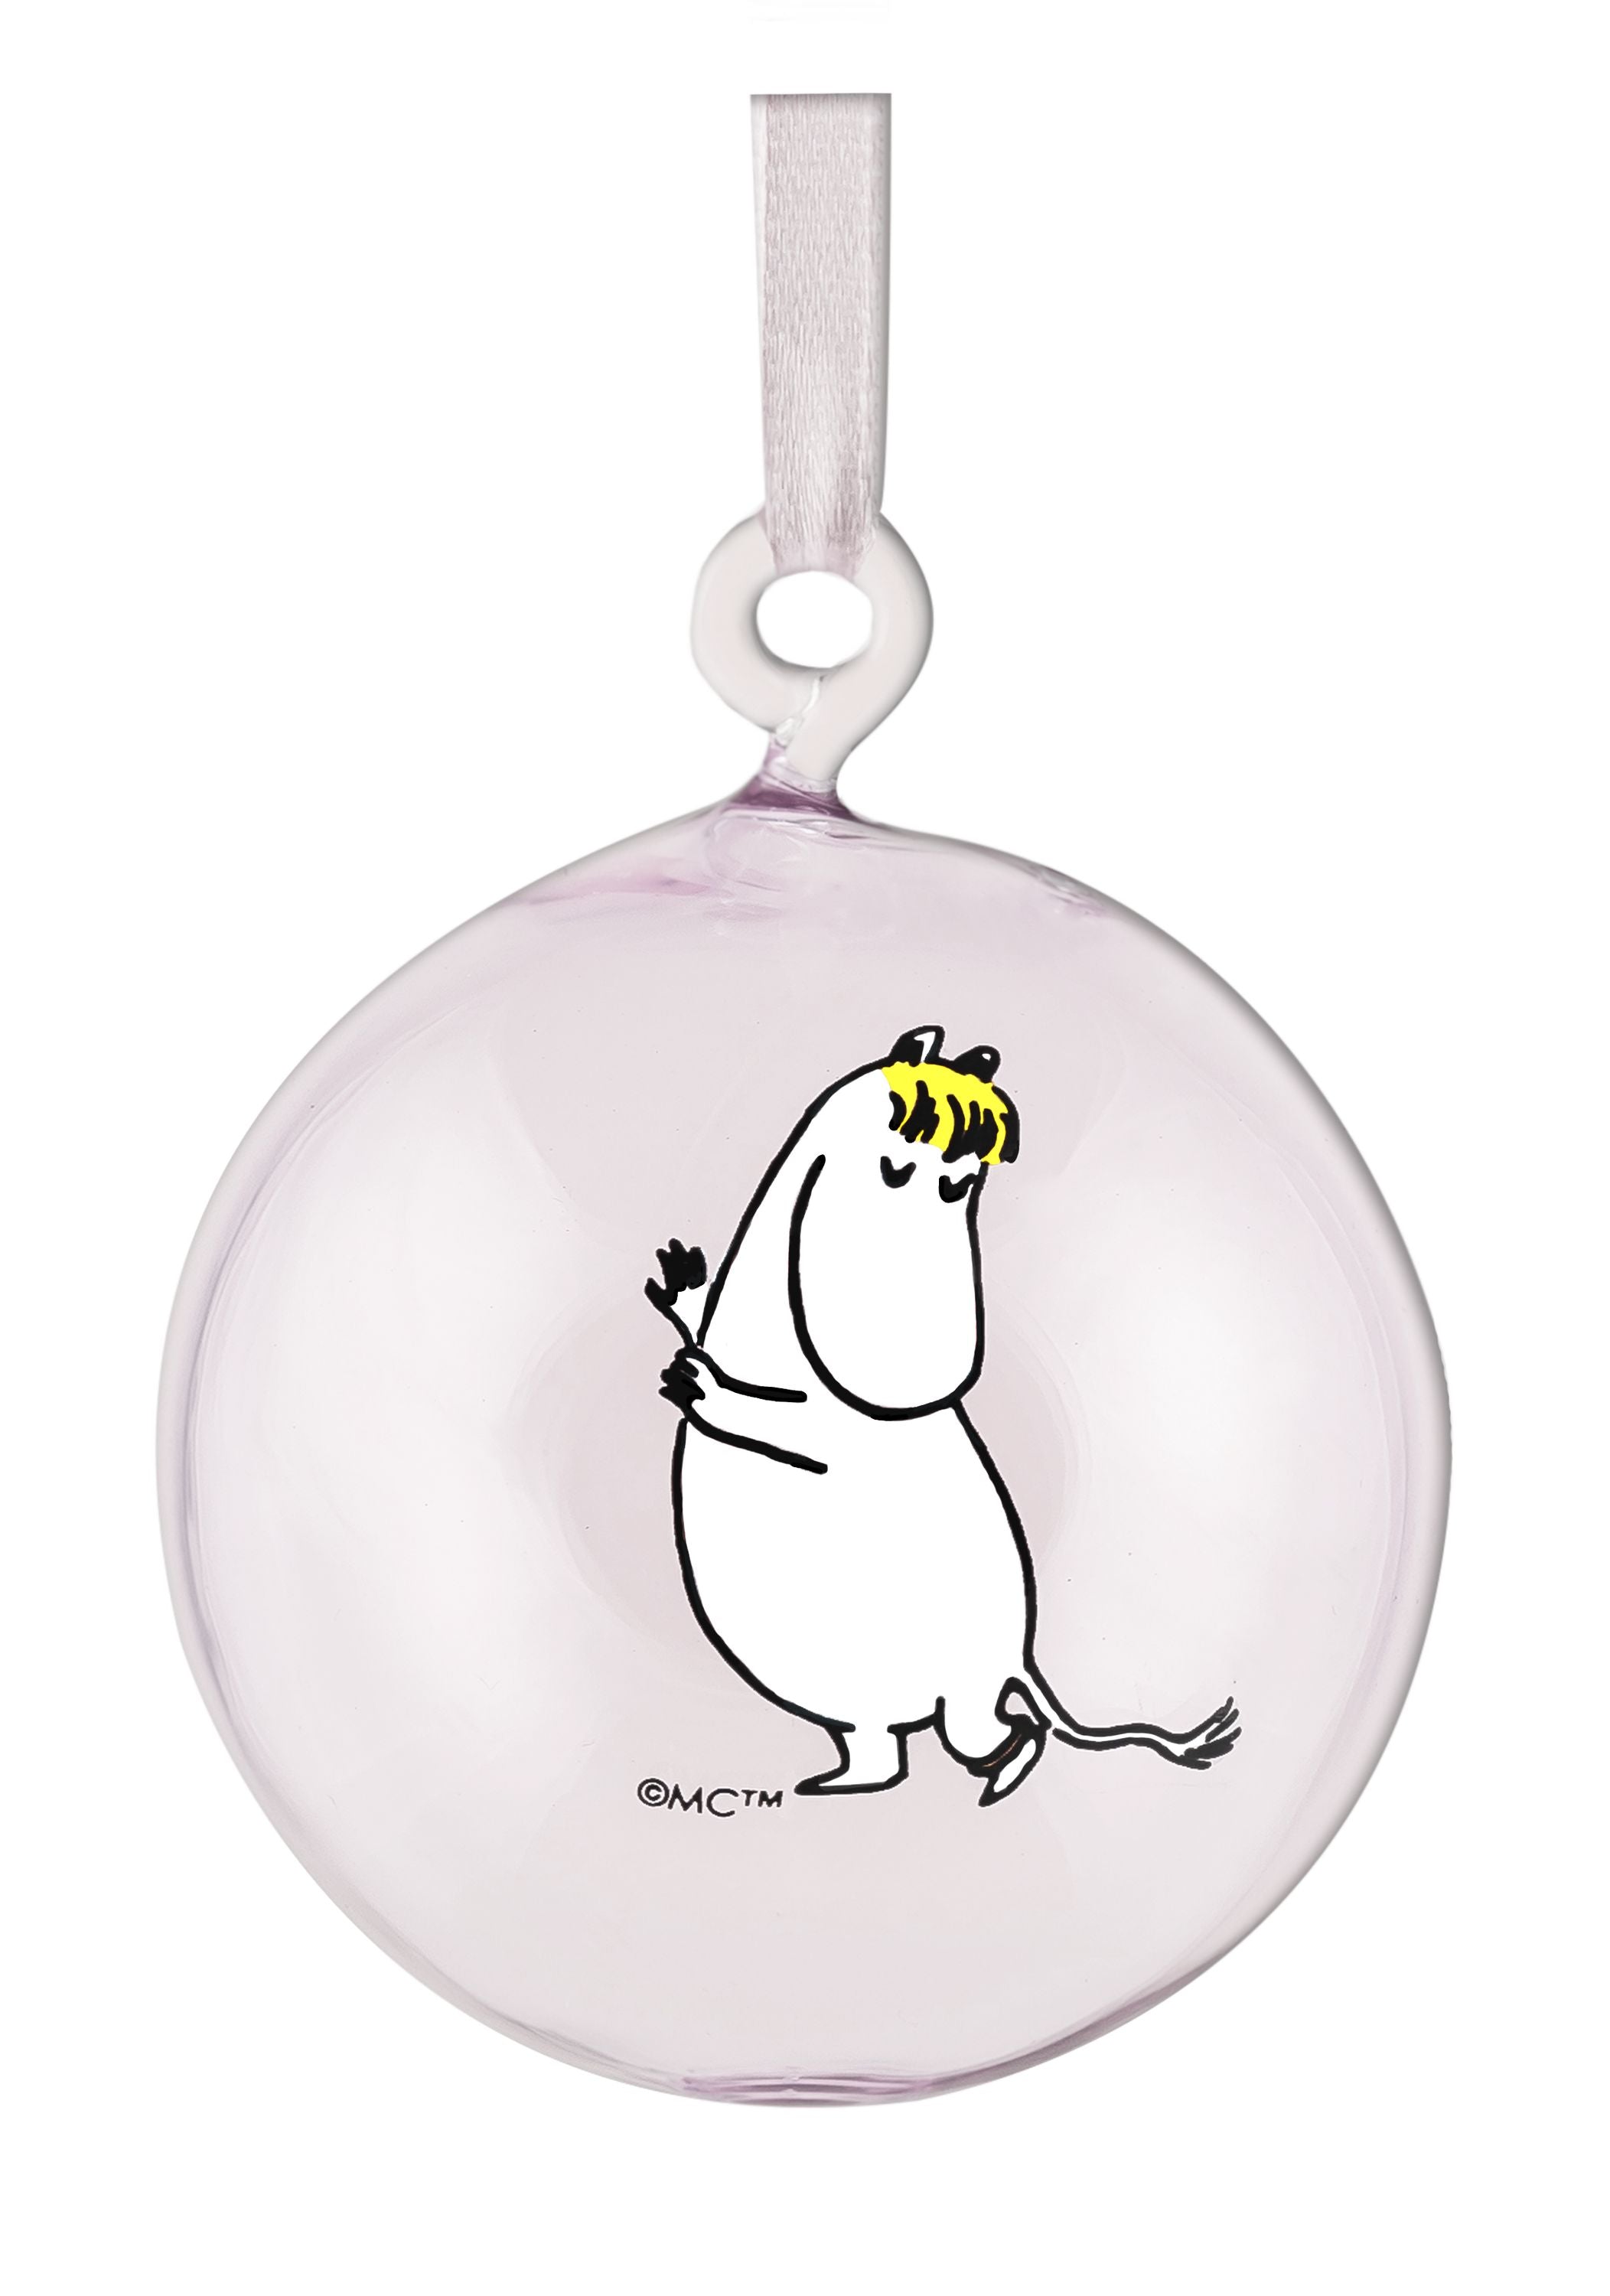 Muurla Moomin Originals Glass Decoration Ball, Geschenkset von 4 PCs